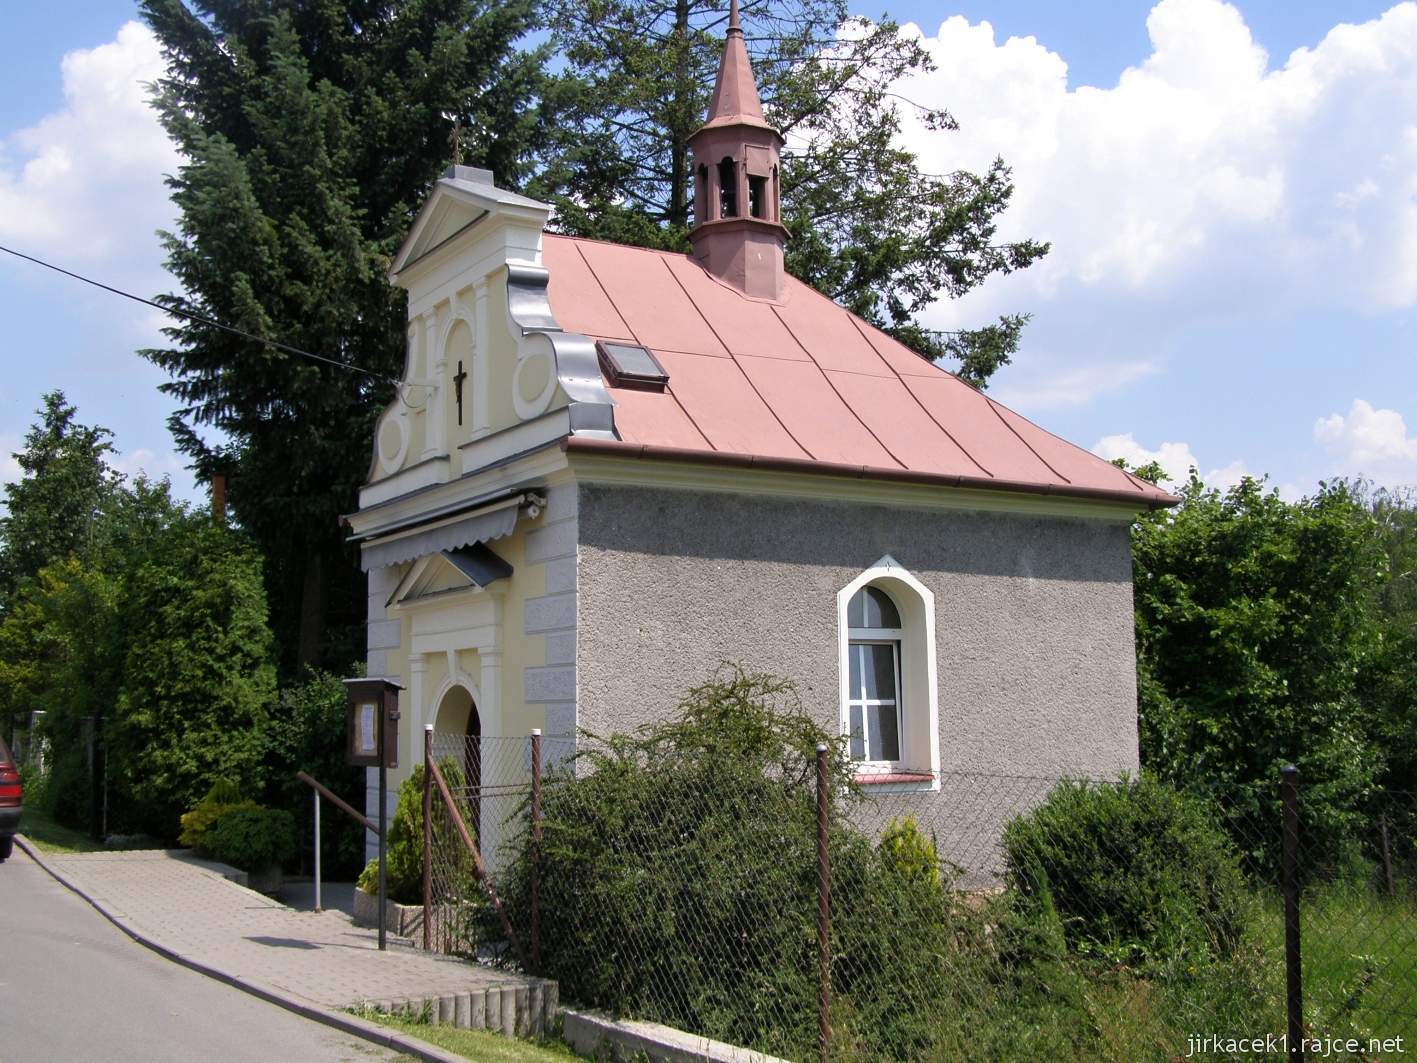 02 - Bobrovníky u Hlučína - kaple sv. Prokopa 05 - celkový pohled